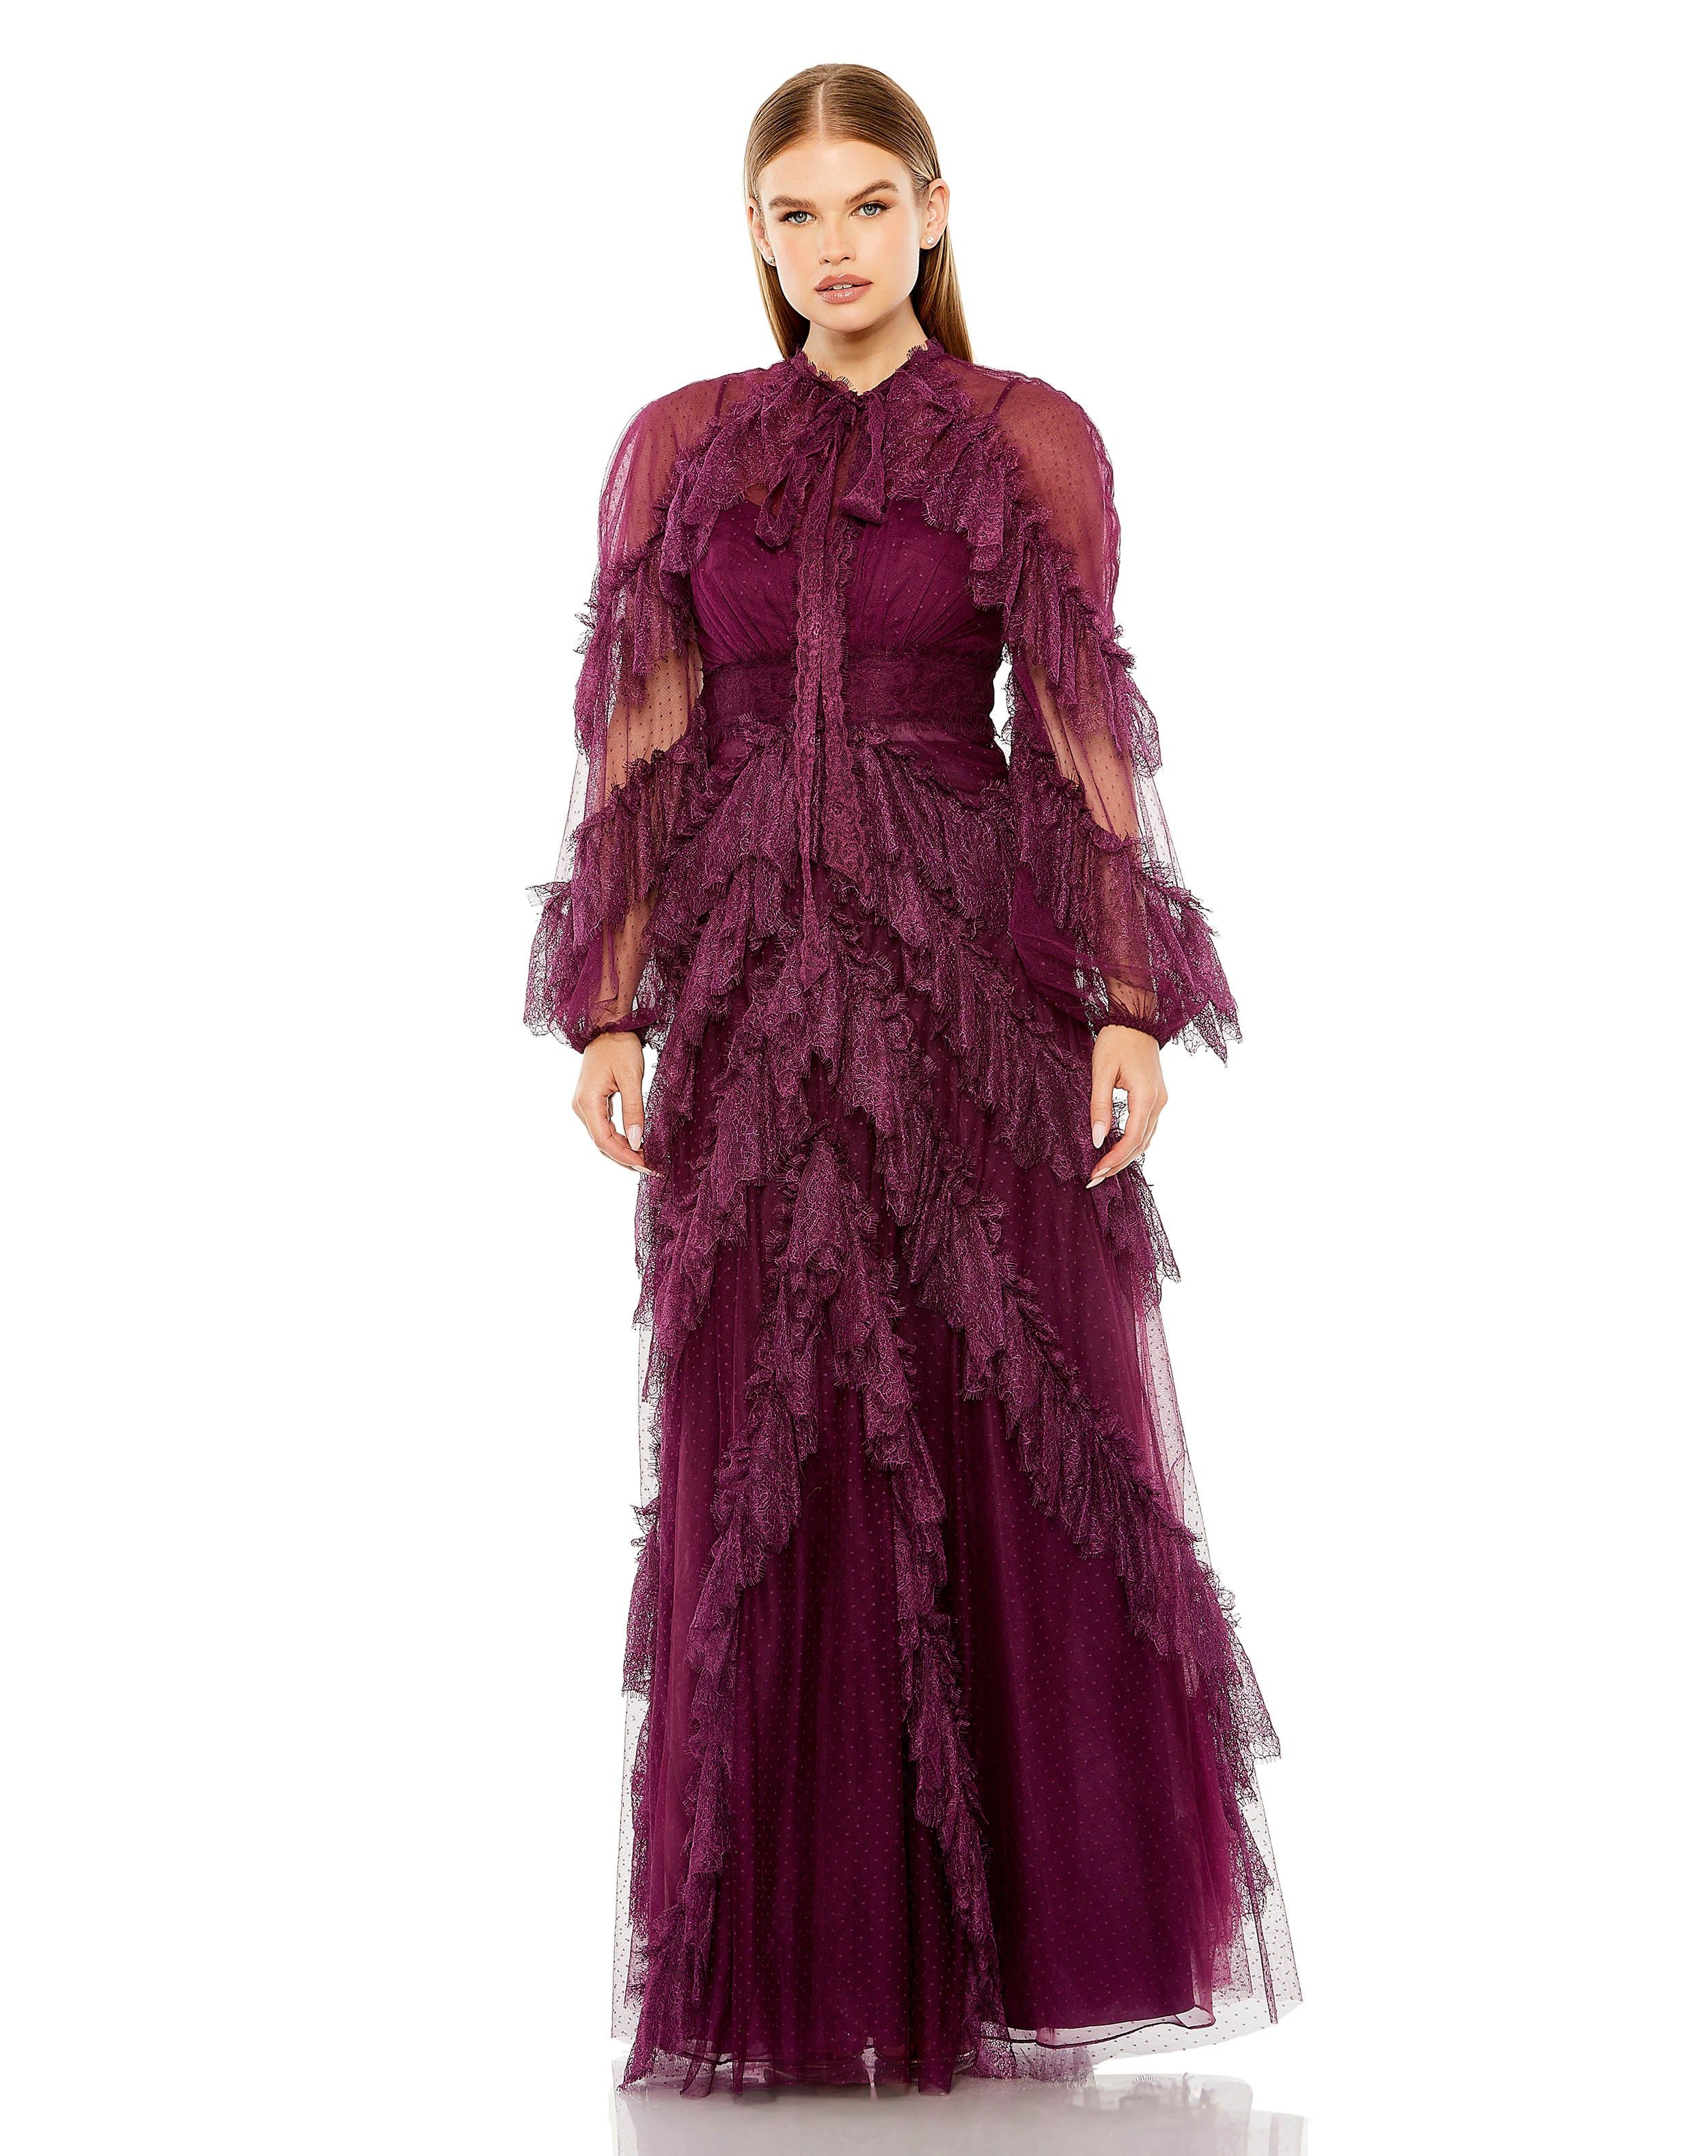 Long Sleeve Lace Ruffle Dot Net Gown | Sample | Sz. 2 | Mac Duggal